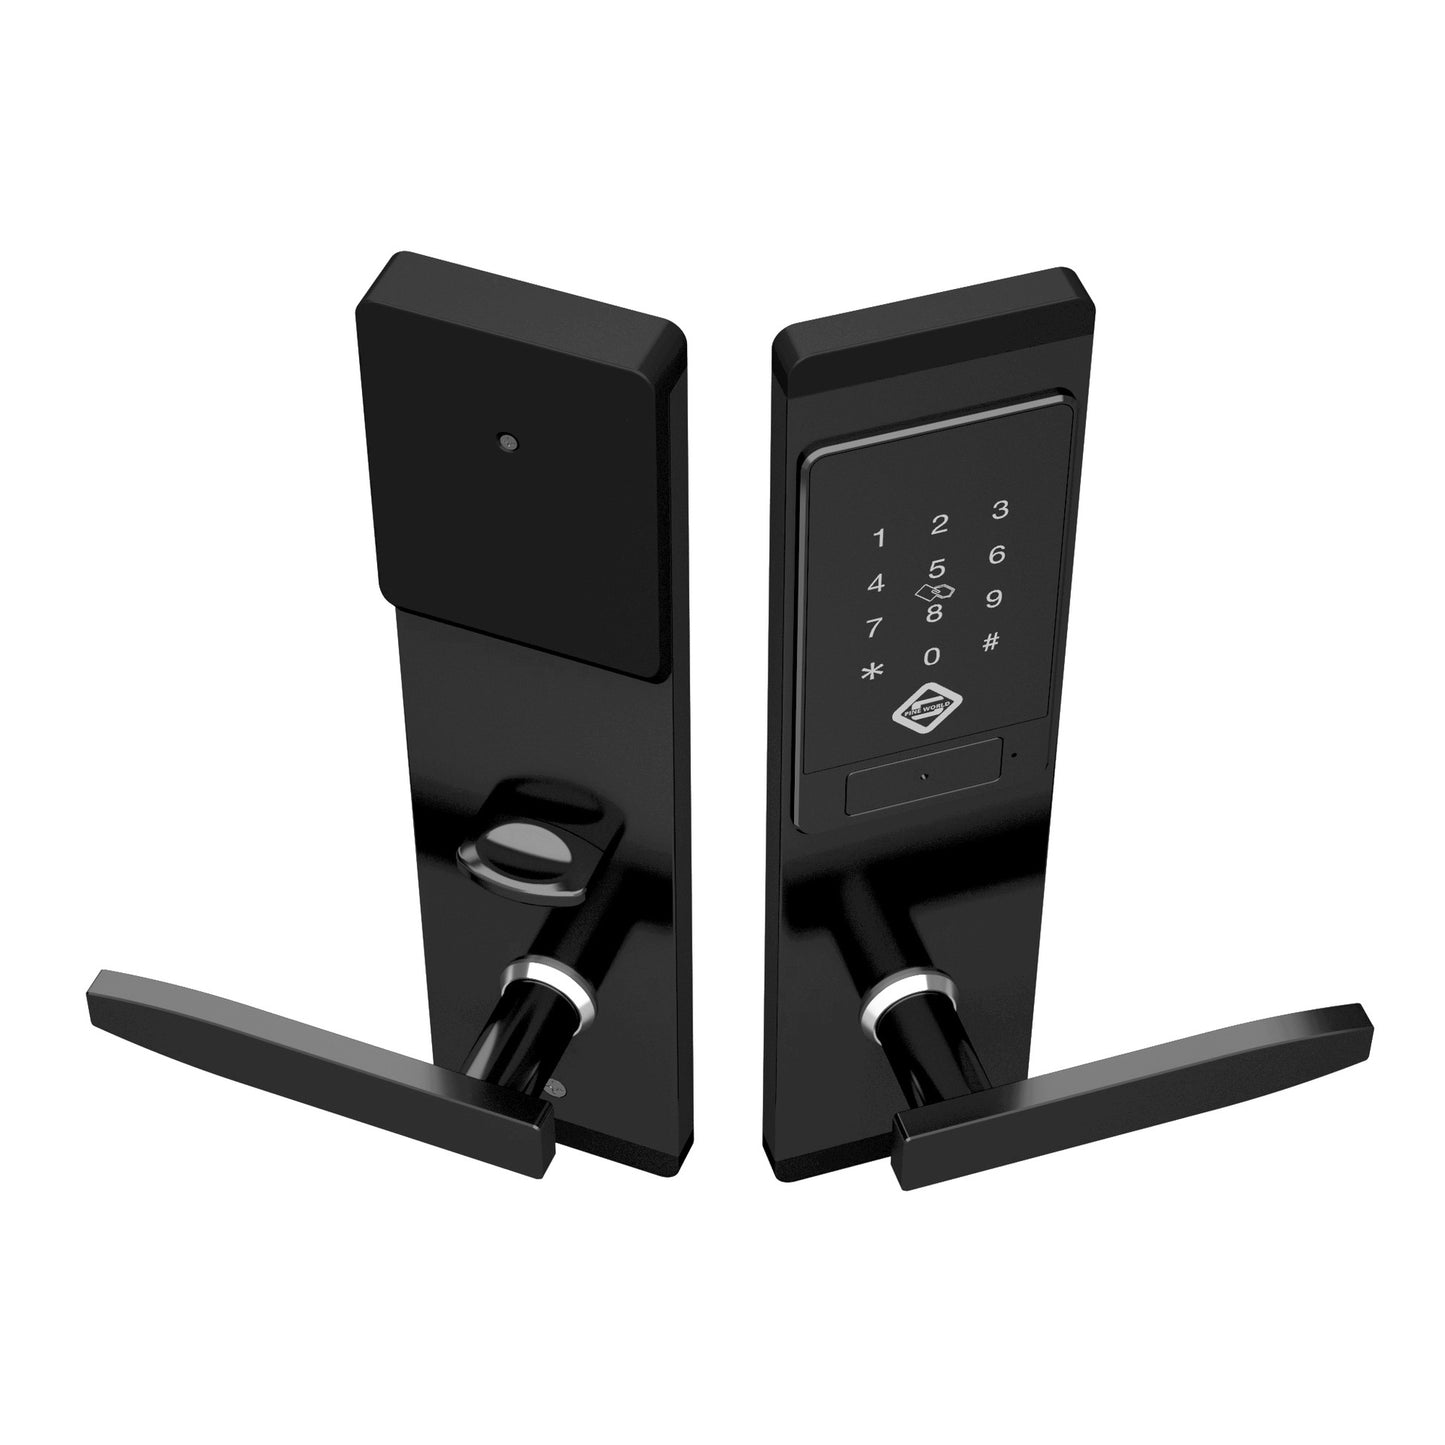 Password remote intelligent door lock